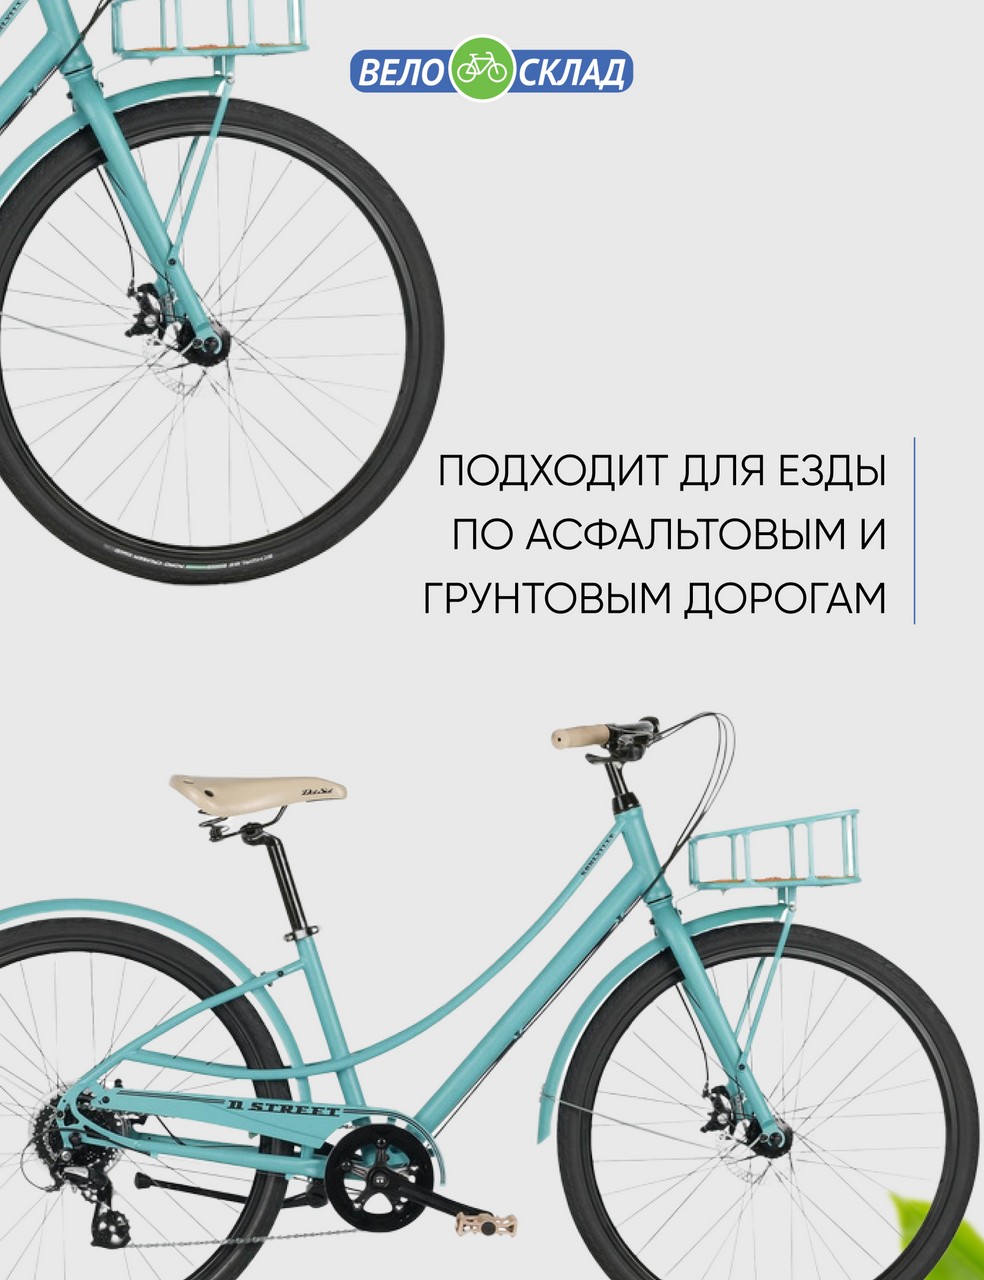 Женский велосипед Haro Soulville ST, год 2021, цвет Голубой, ростовка 15